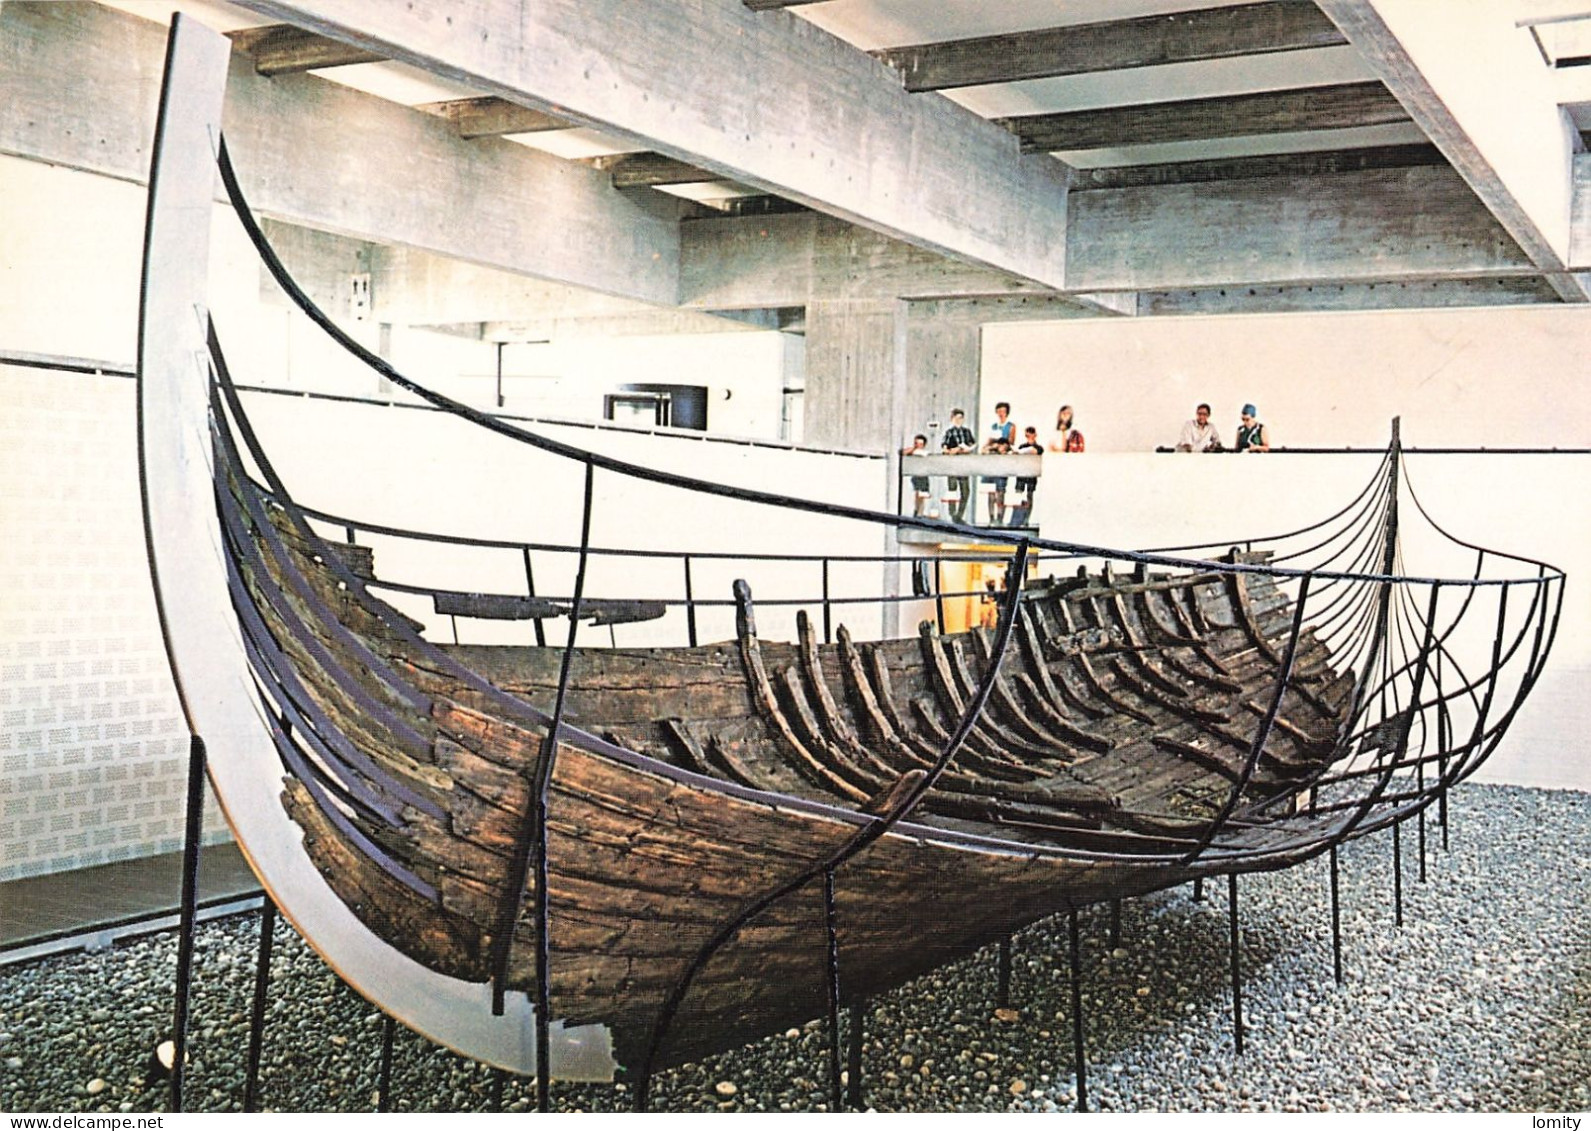 déstockage thème bateau bateaux lot de 9 cartes postales Chebec la Bretonne galère romaine , drakkar viking